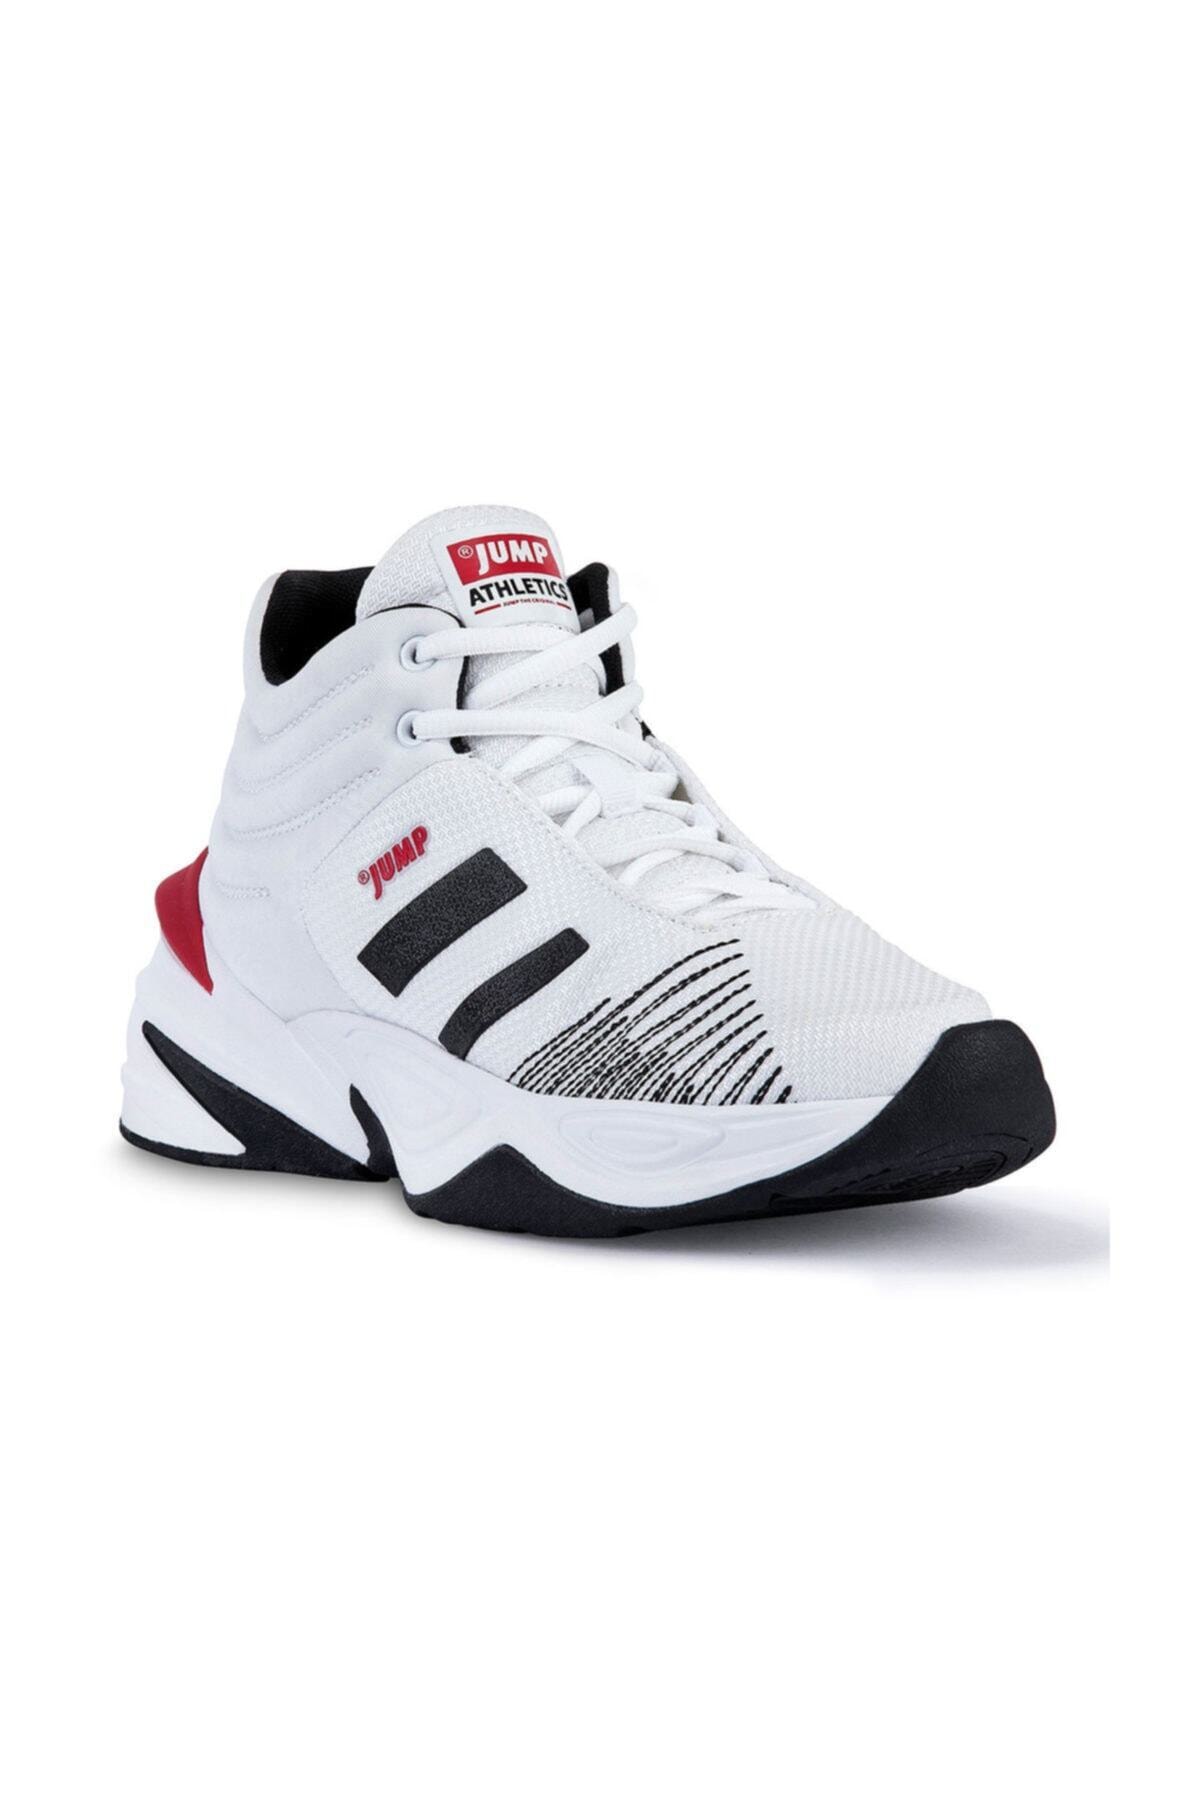 24774 Beyaz-siyah-kırmızı Erkek Spor Ayakkabı